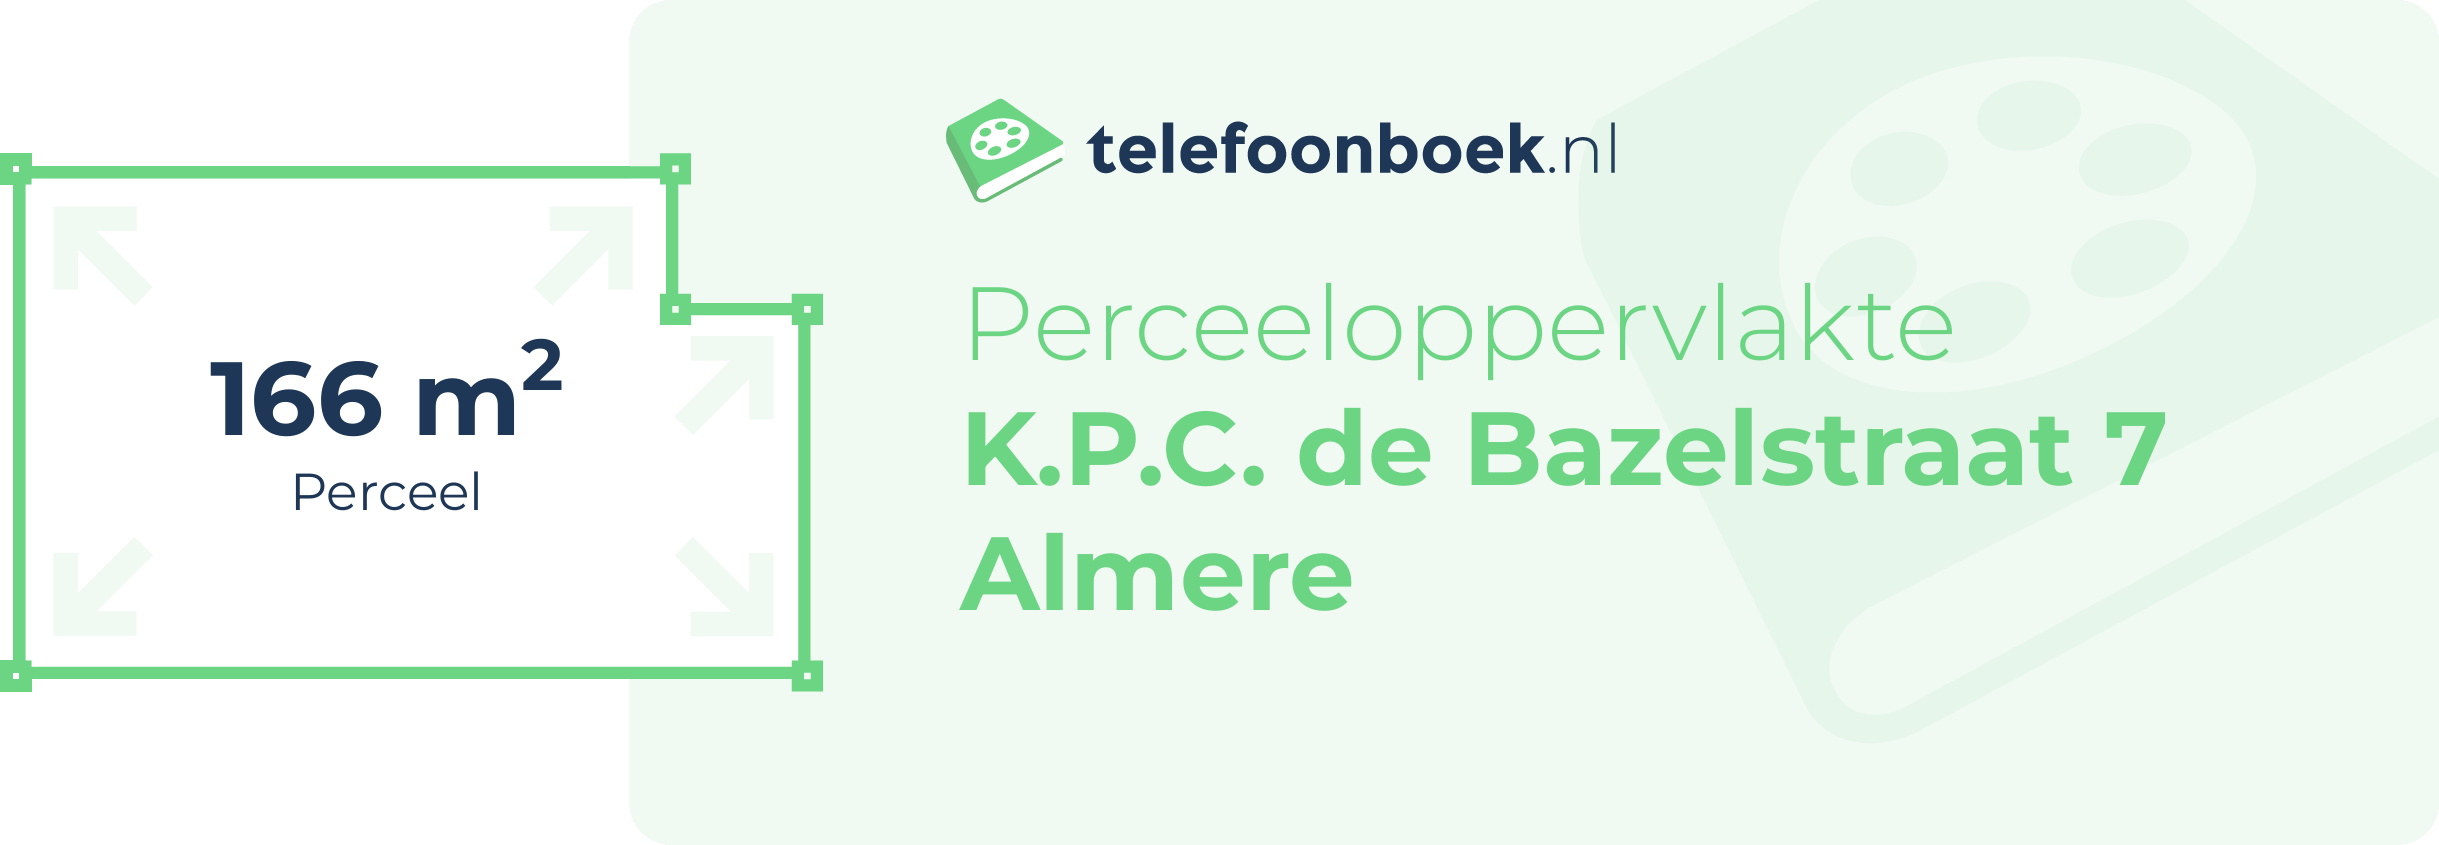 Perceeloppervlakte K.P.C. De Bazelstraat 7 Almere